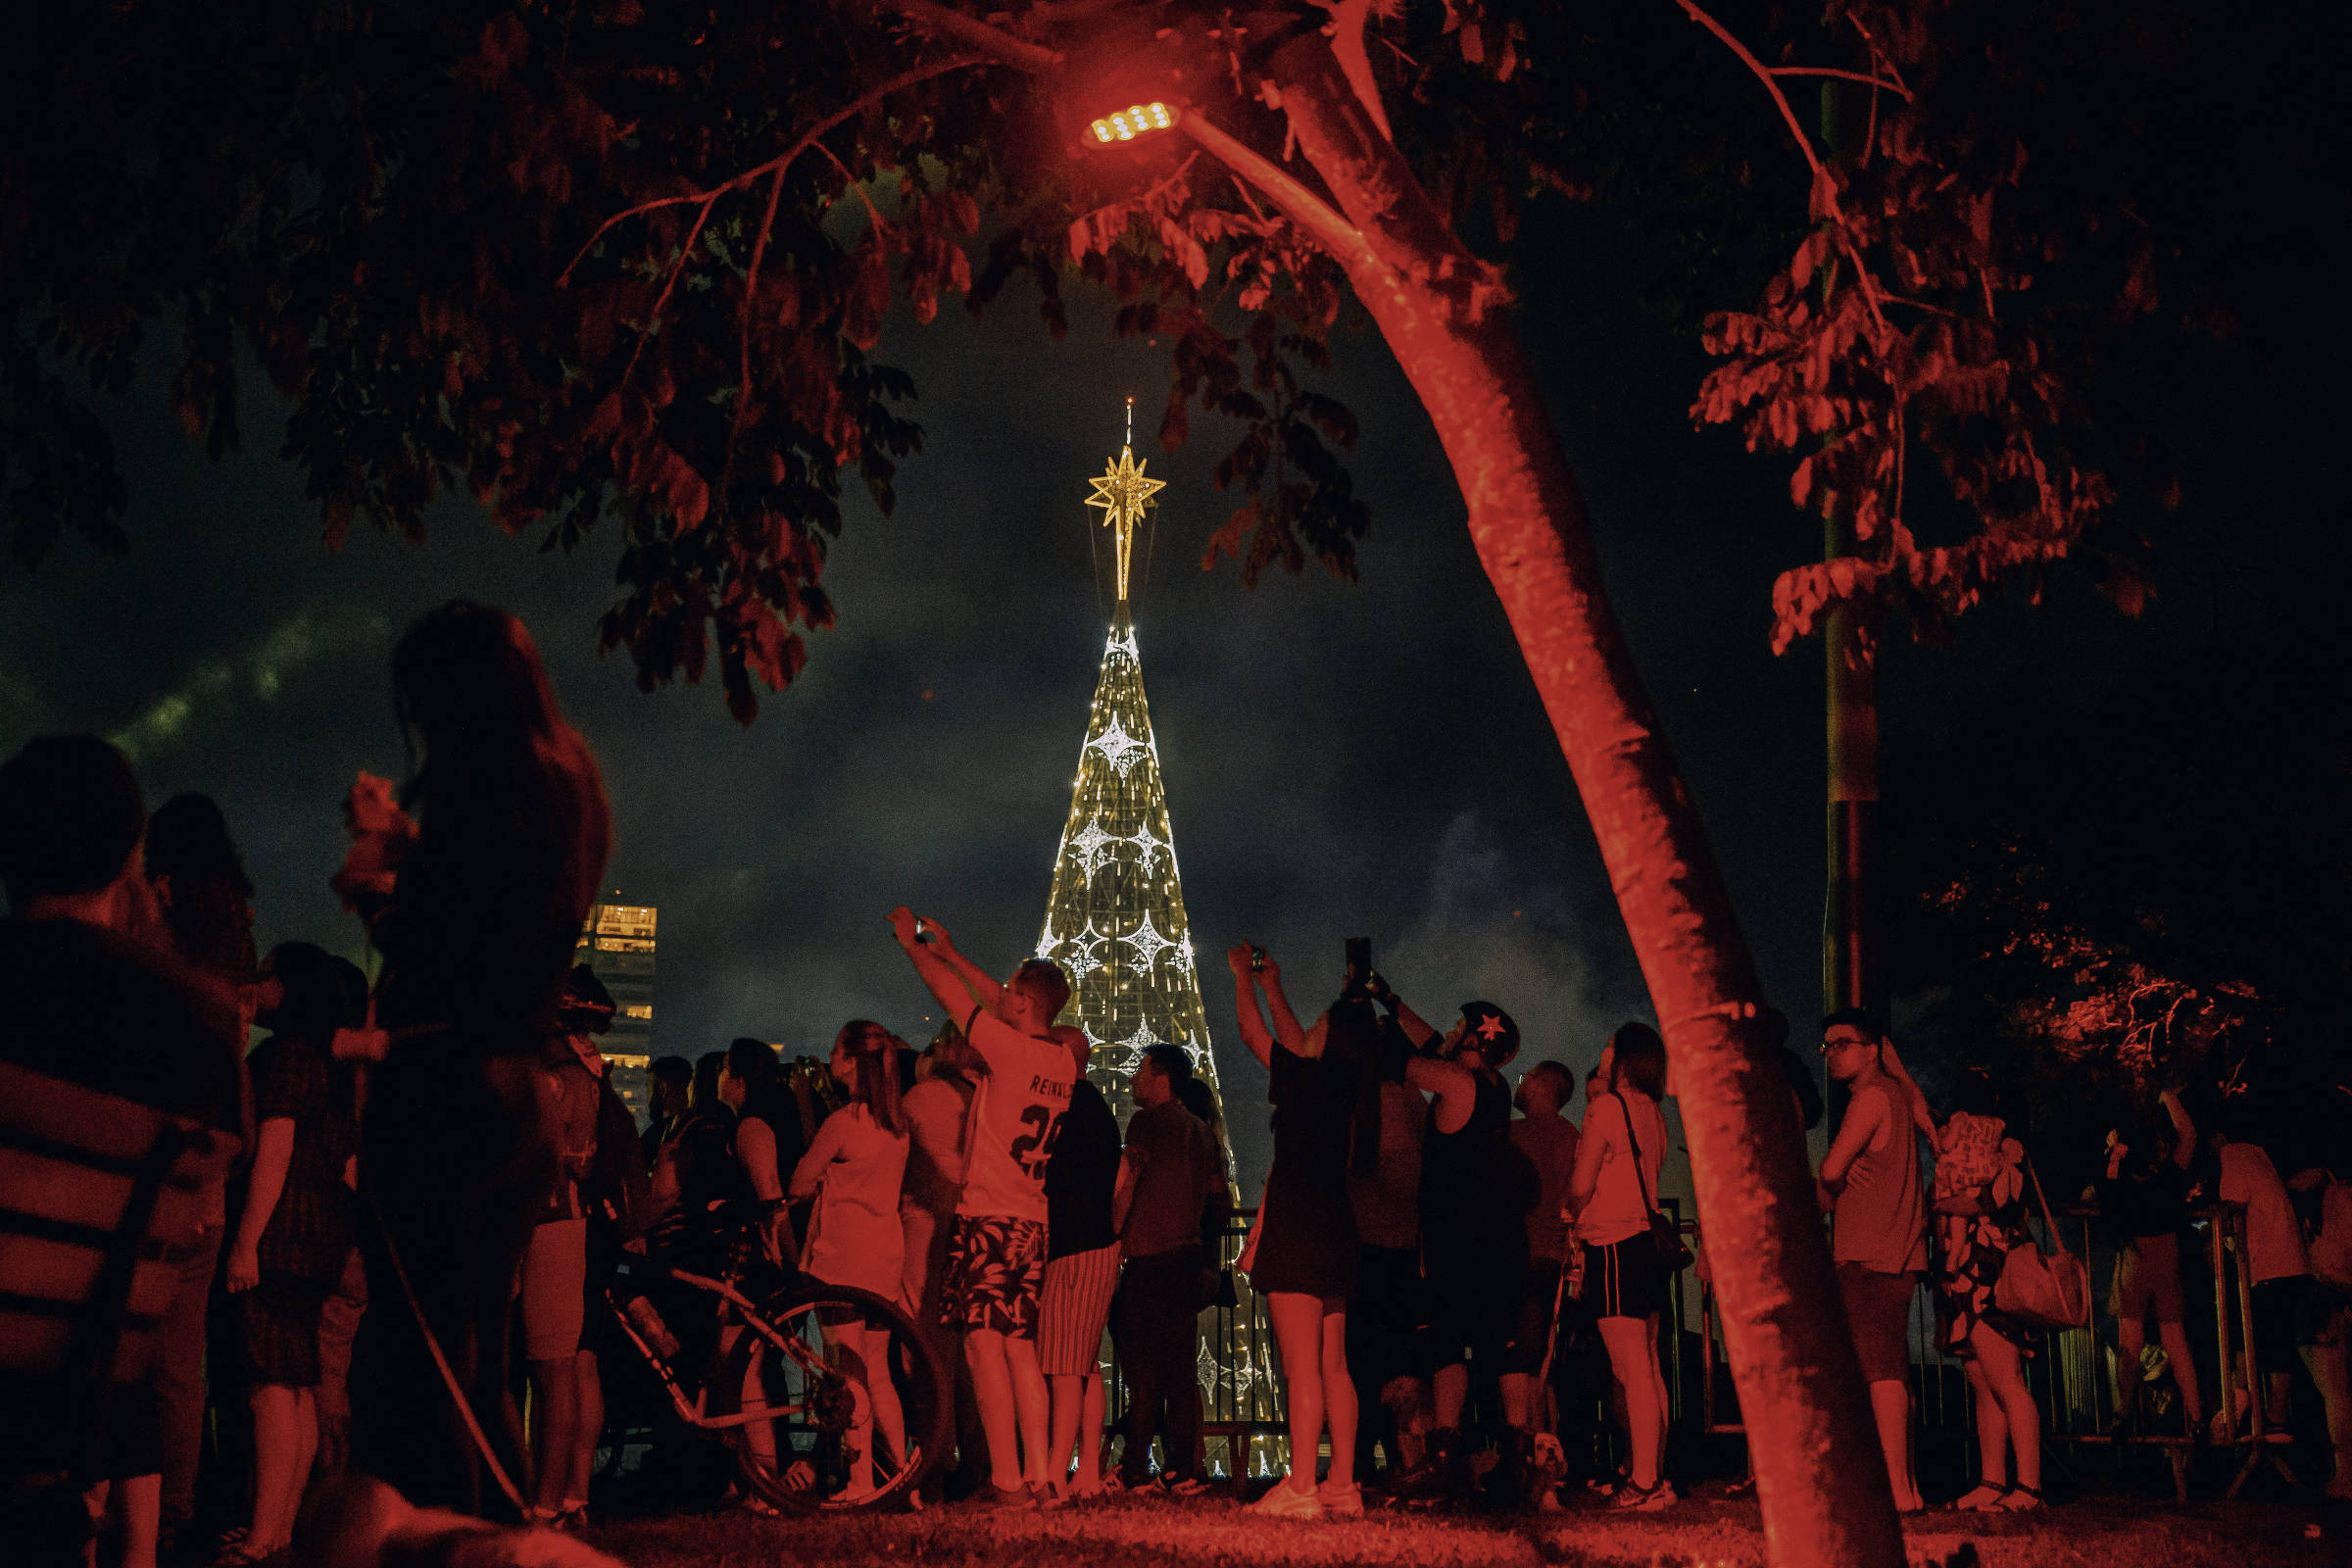 Guerra' de árvores gigantes agita Natal em São Paulo - 10/12/2022 -  Cotidiano - Folha